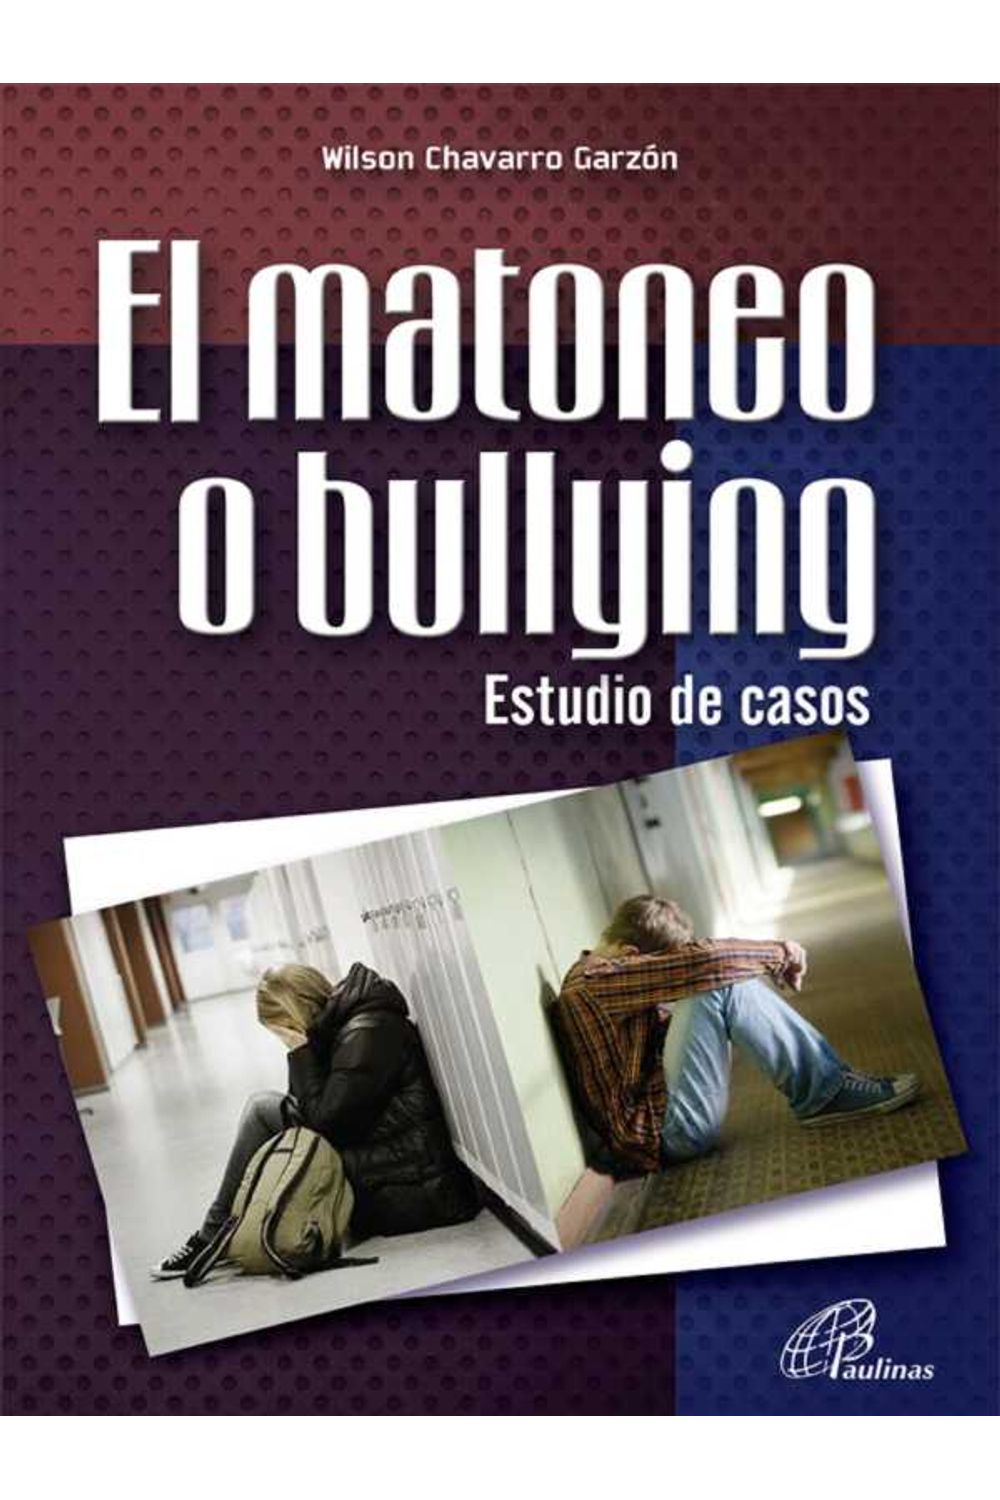 bw-el-matoneo-o-bullying-estudio-de-casos-instituto-misionero-hijas-de-san-pablo-paulinas-9789586698566